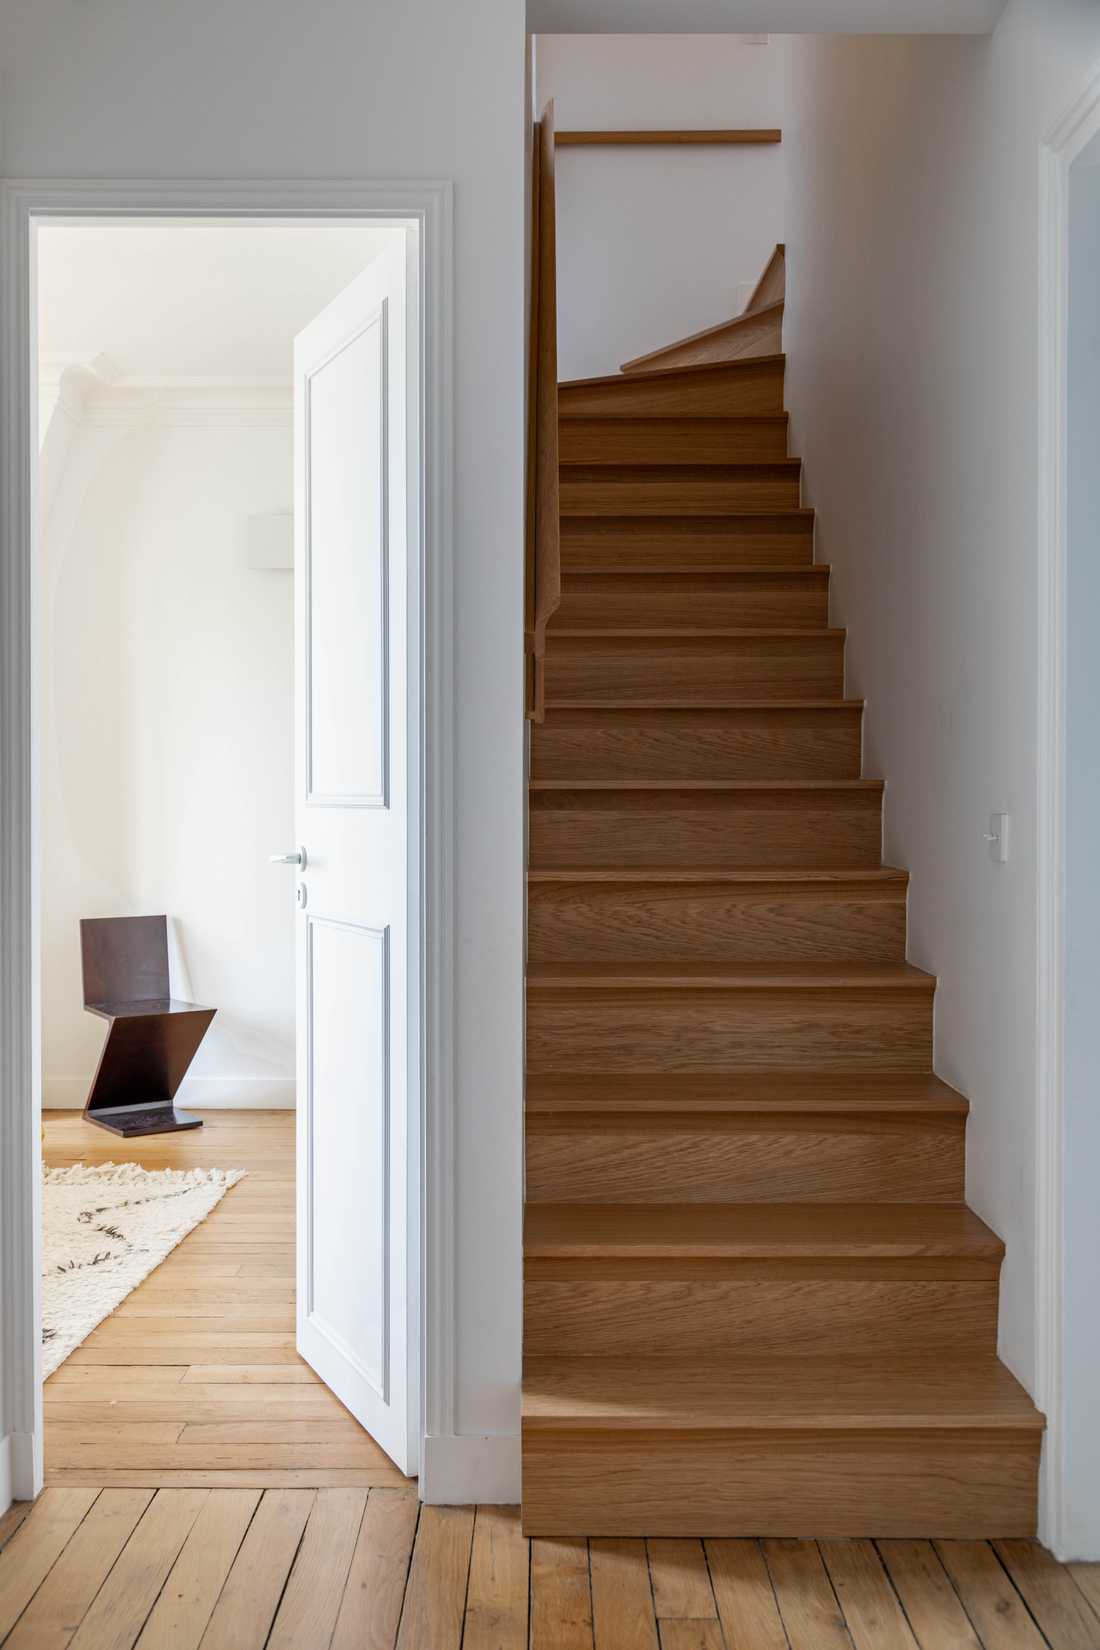 Escalier sur mesure conçu par un architecte d'intérieur dans un appartement duplex haussmannien